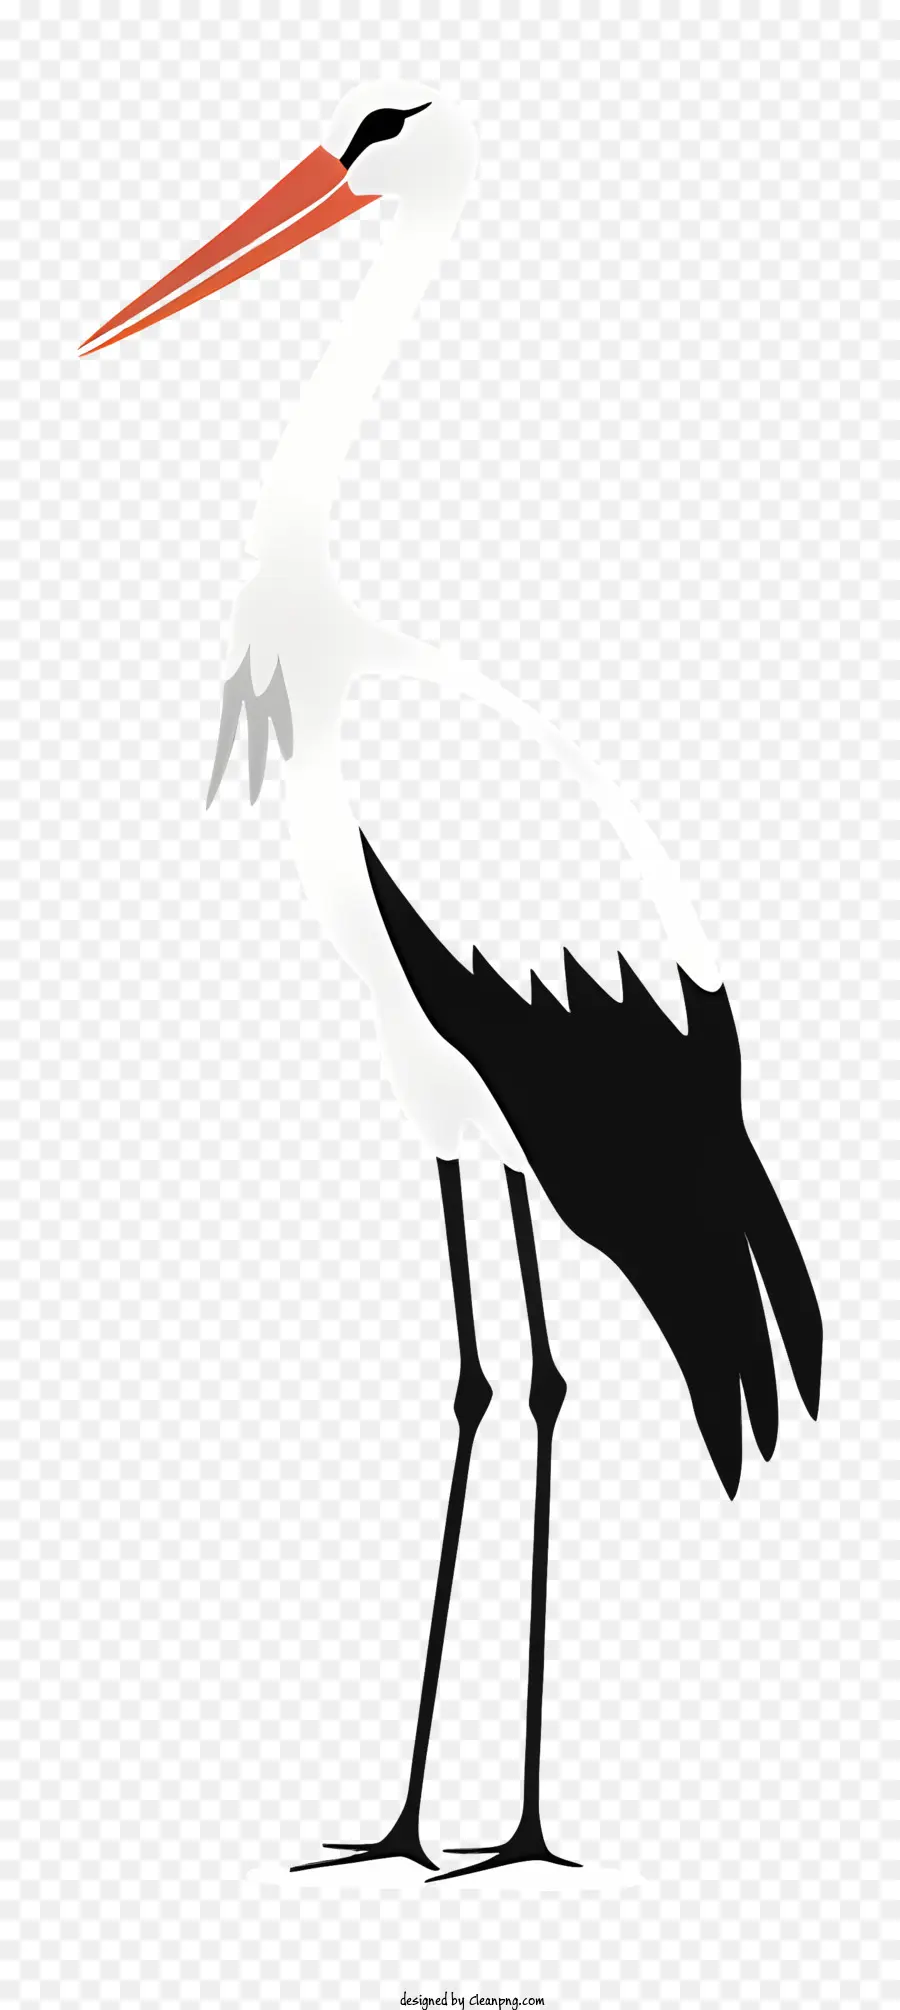 Natura selvatica per uccelli di cicogna bianca di cicogna - Polto in bianco e nero con ali allargate